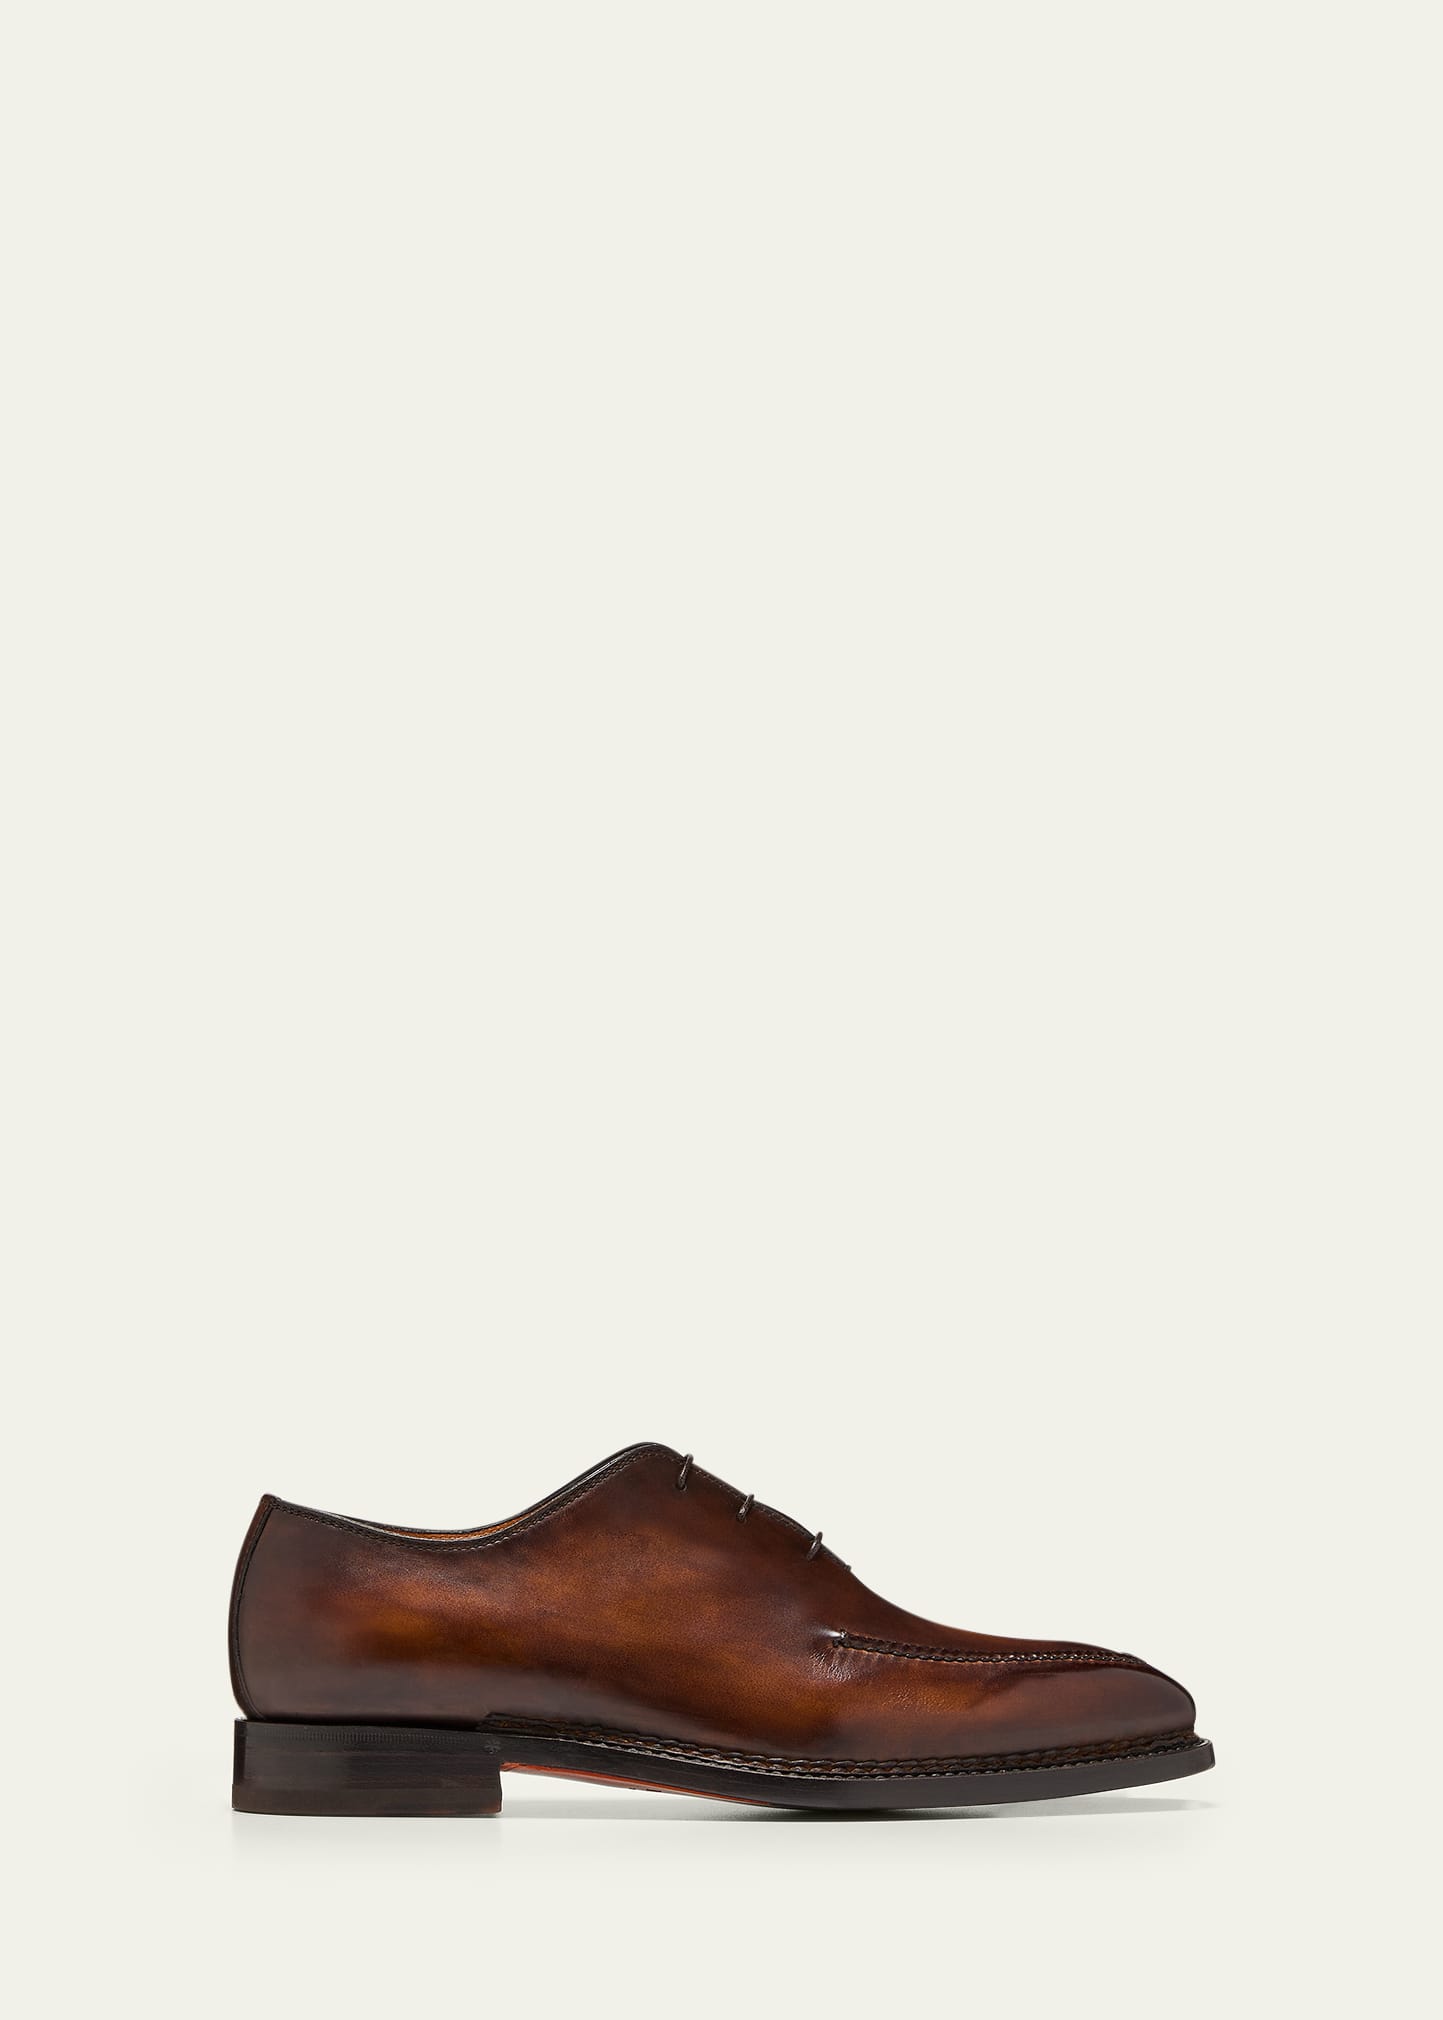 Men's Cellini Apron-Toe Leather Oxfords